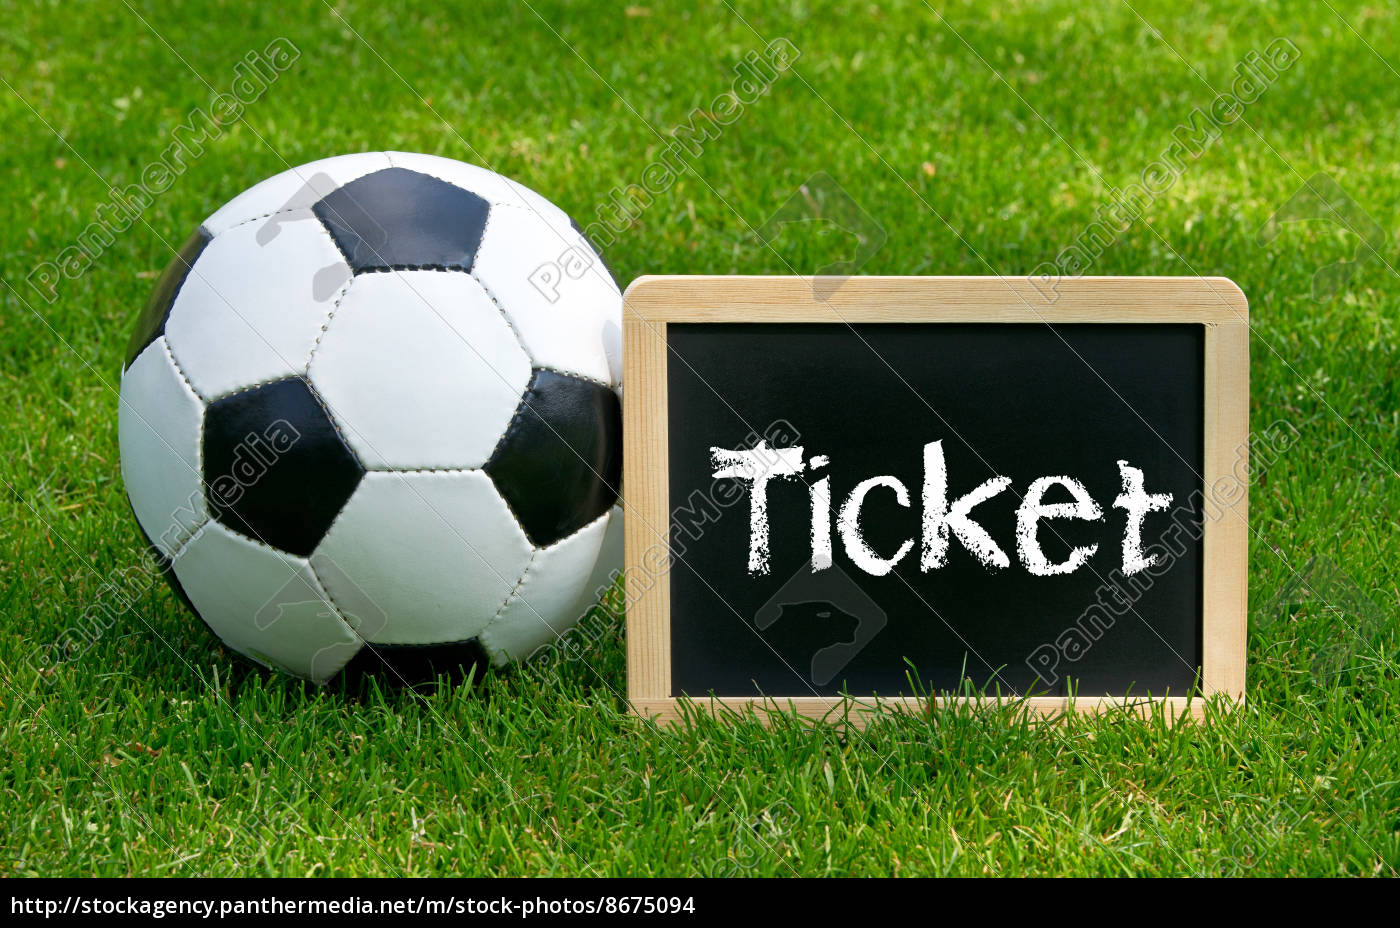 Fussball Ticket - Soccer Ticket - Stockfoto - #8675094 - Bildagentur